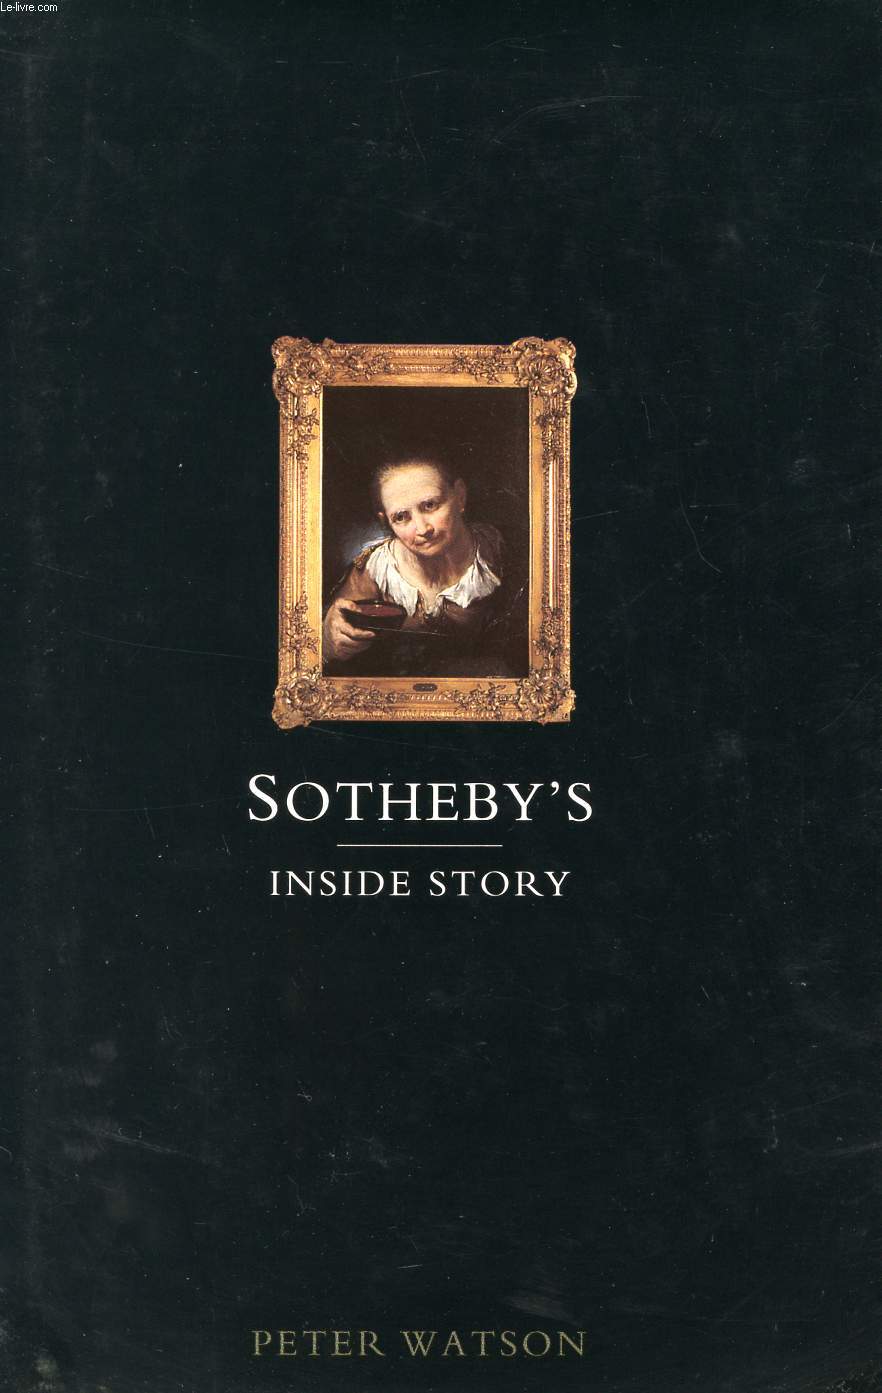 SOTHEBY'S, INSIDE STORY